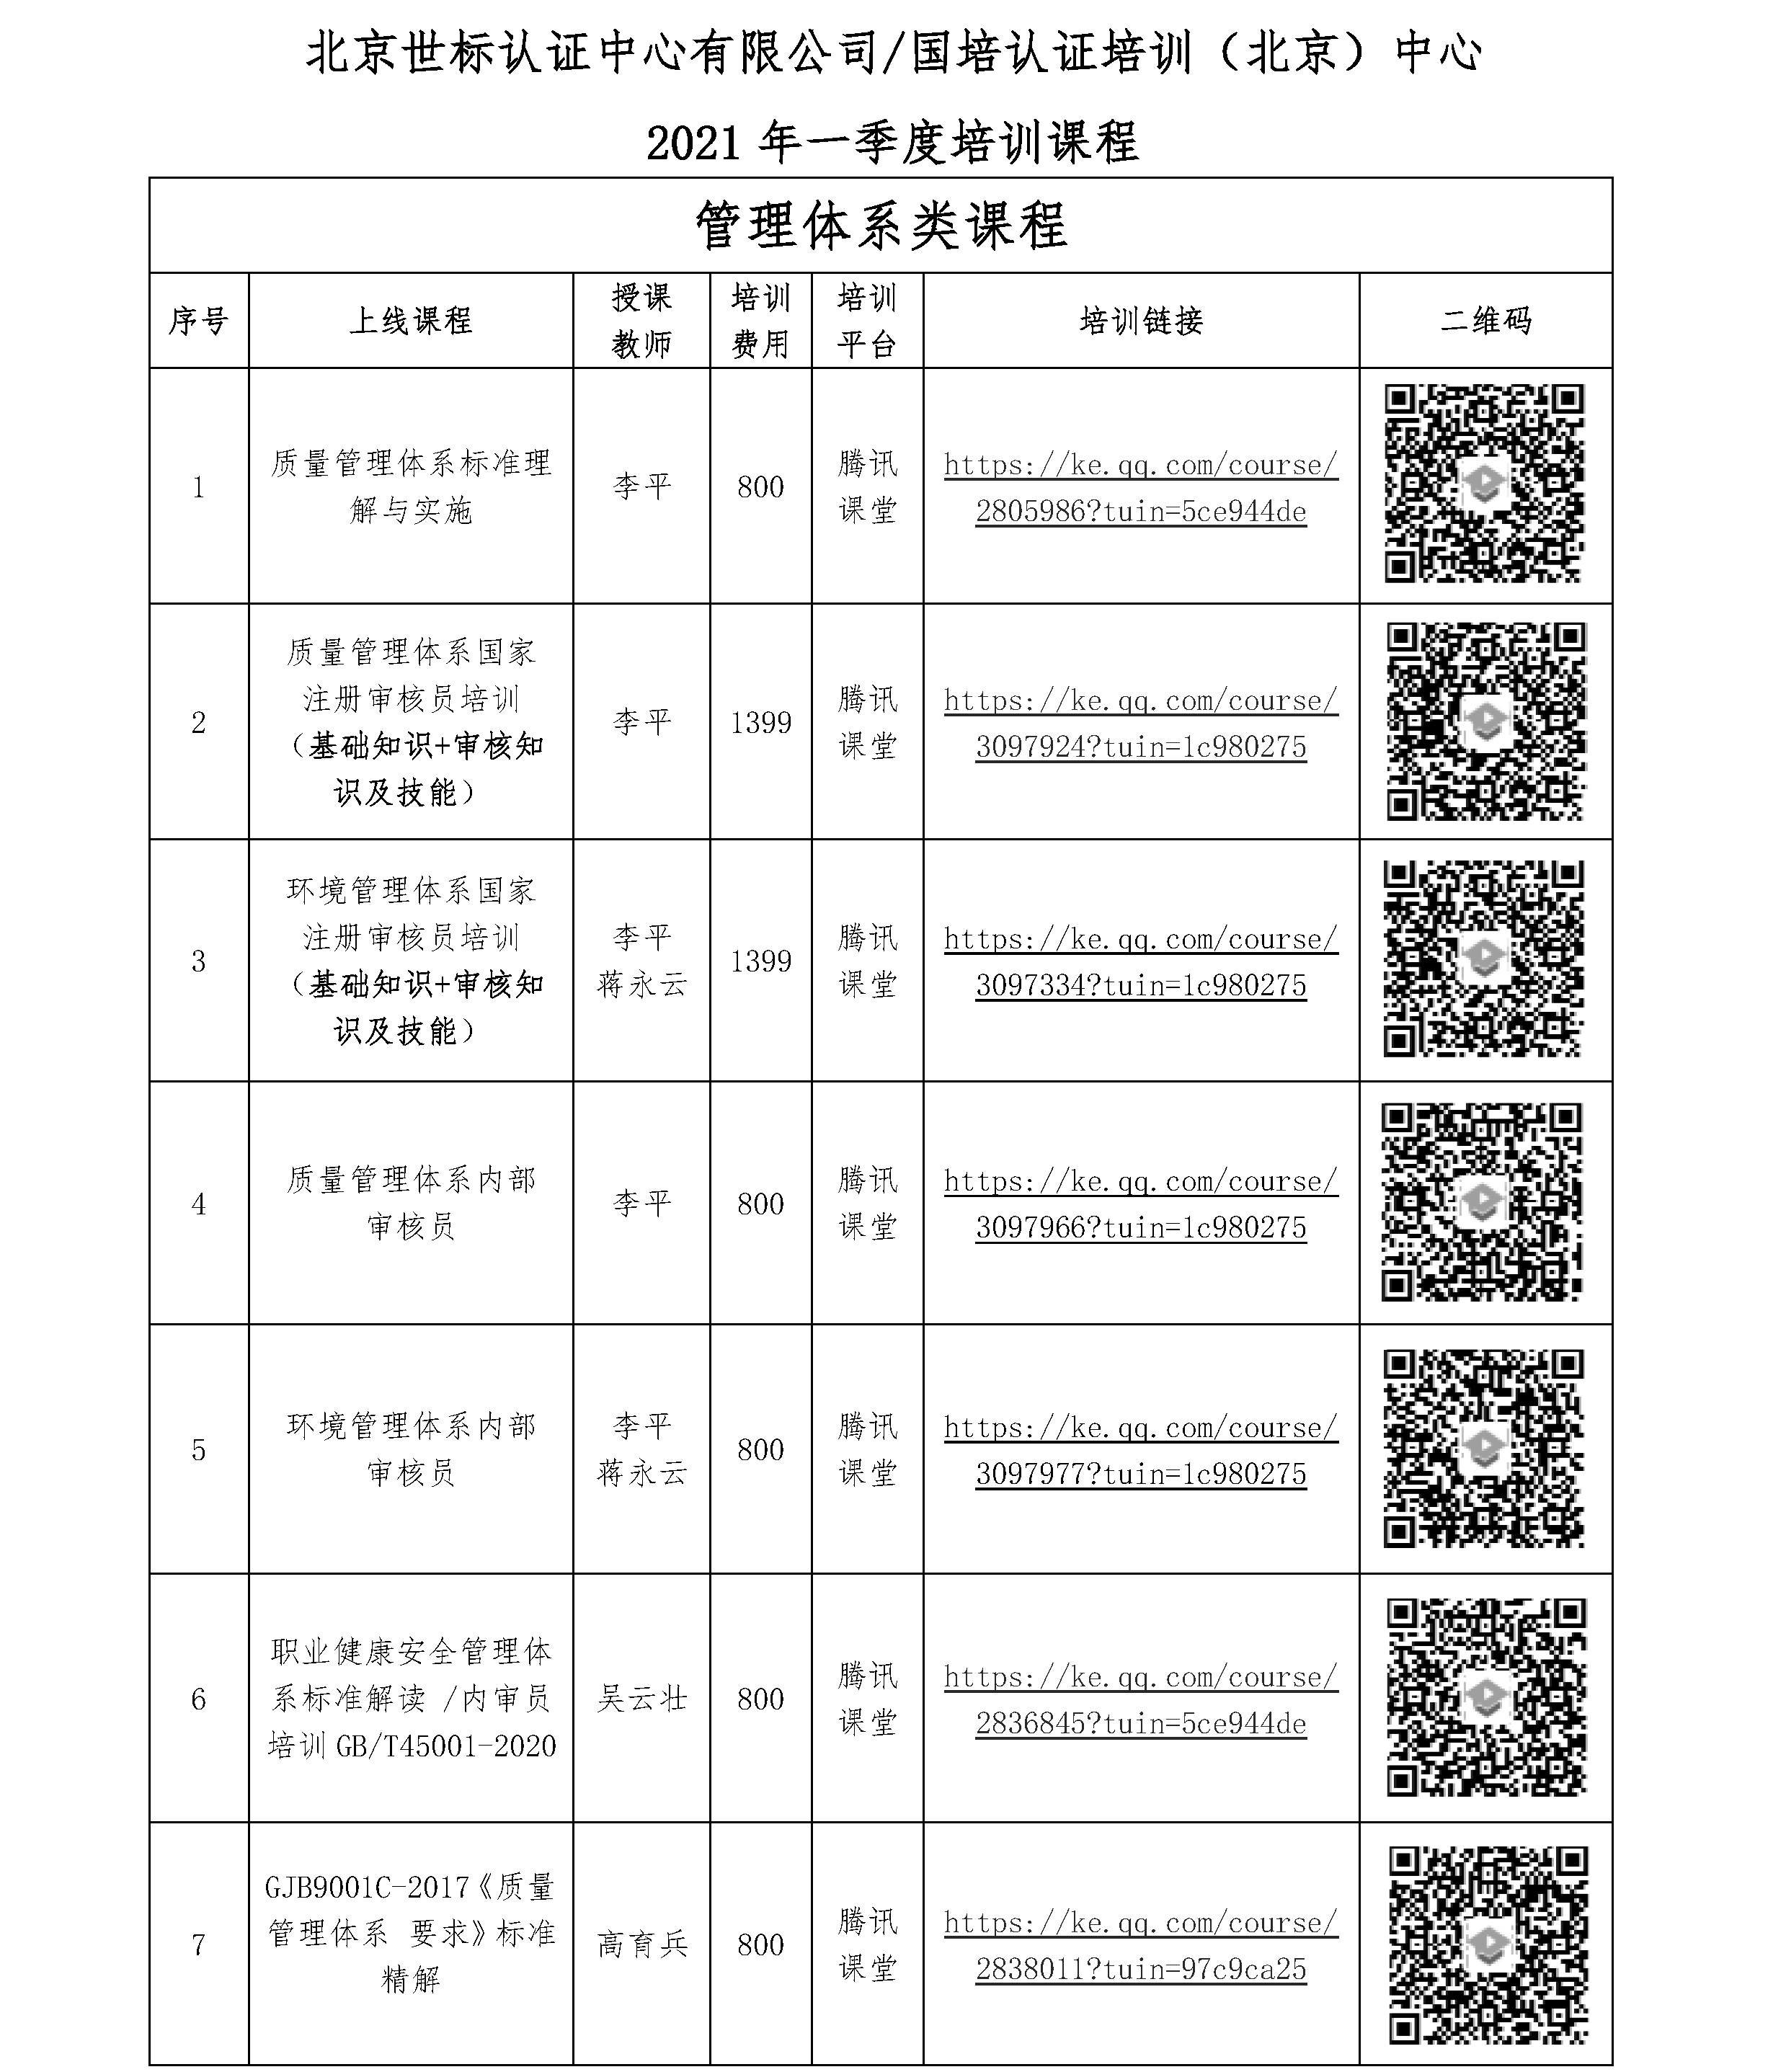 北京世标认证中心有限公司/国培认证培训（北京）中心 2021年一季度培训课程(图1)